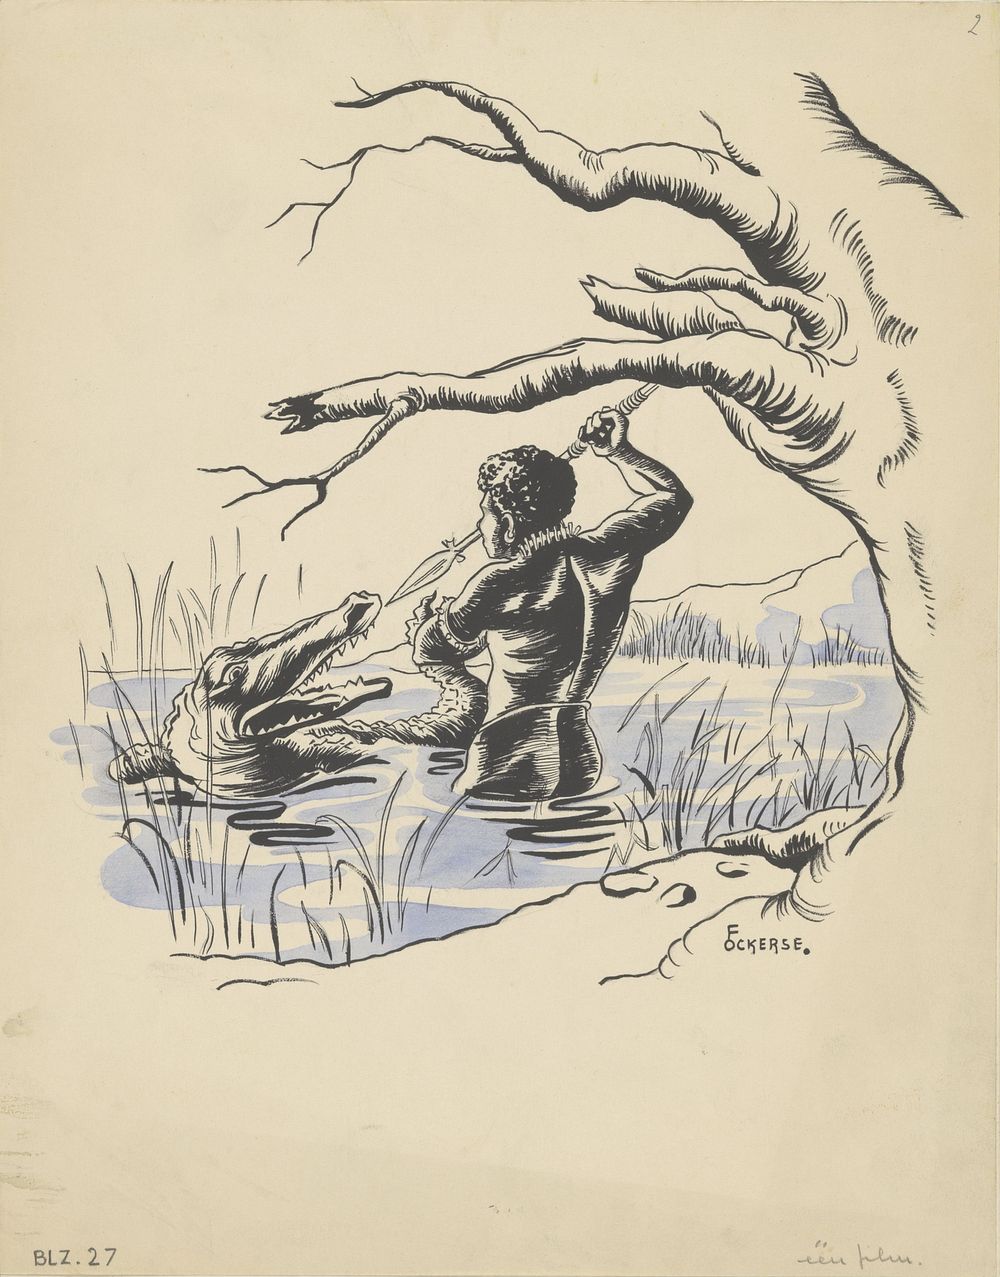 Jager valt een krokodil aan in een rivier (in or before 1936) by F Ockerse